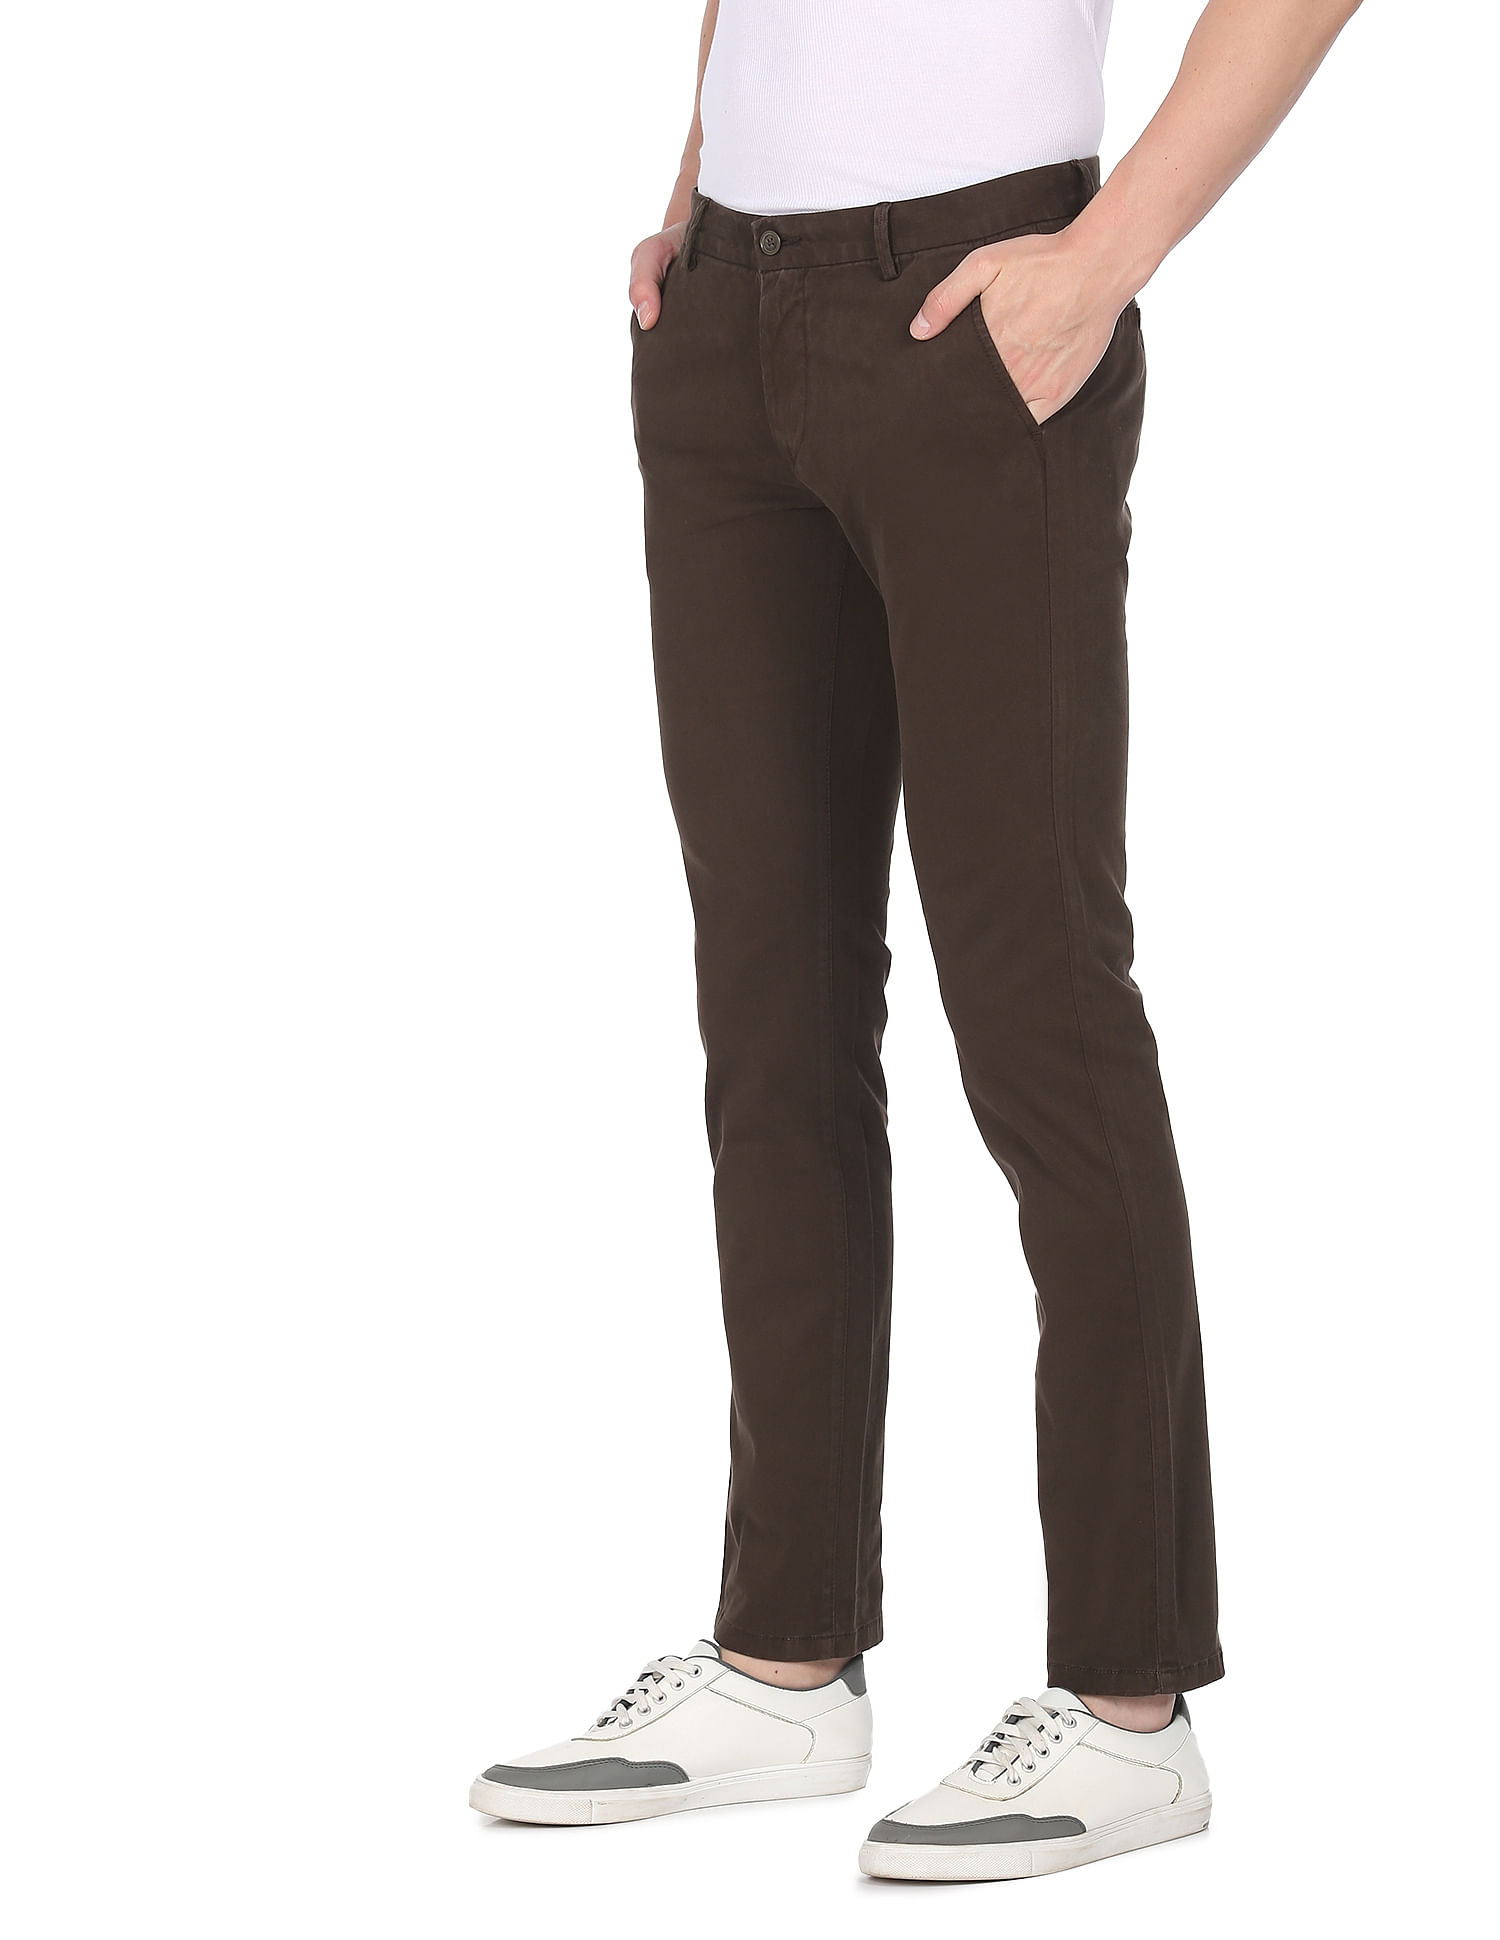 Men Trousers Pants SG300  DualTone GreyBlack